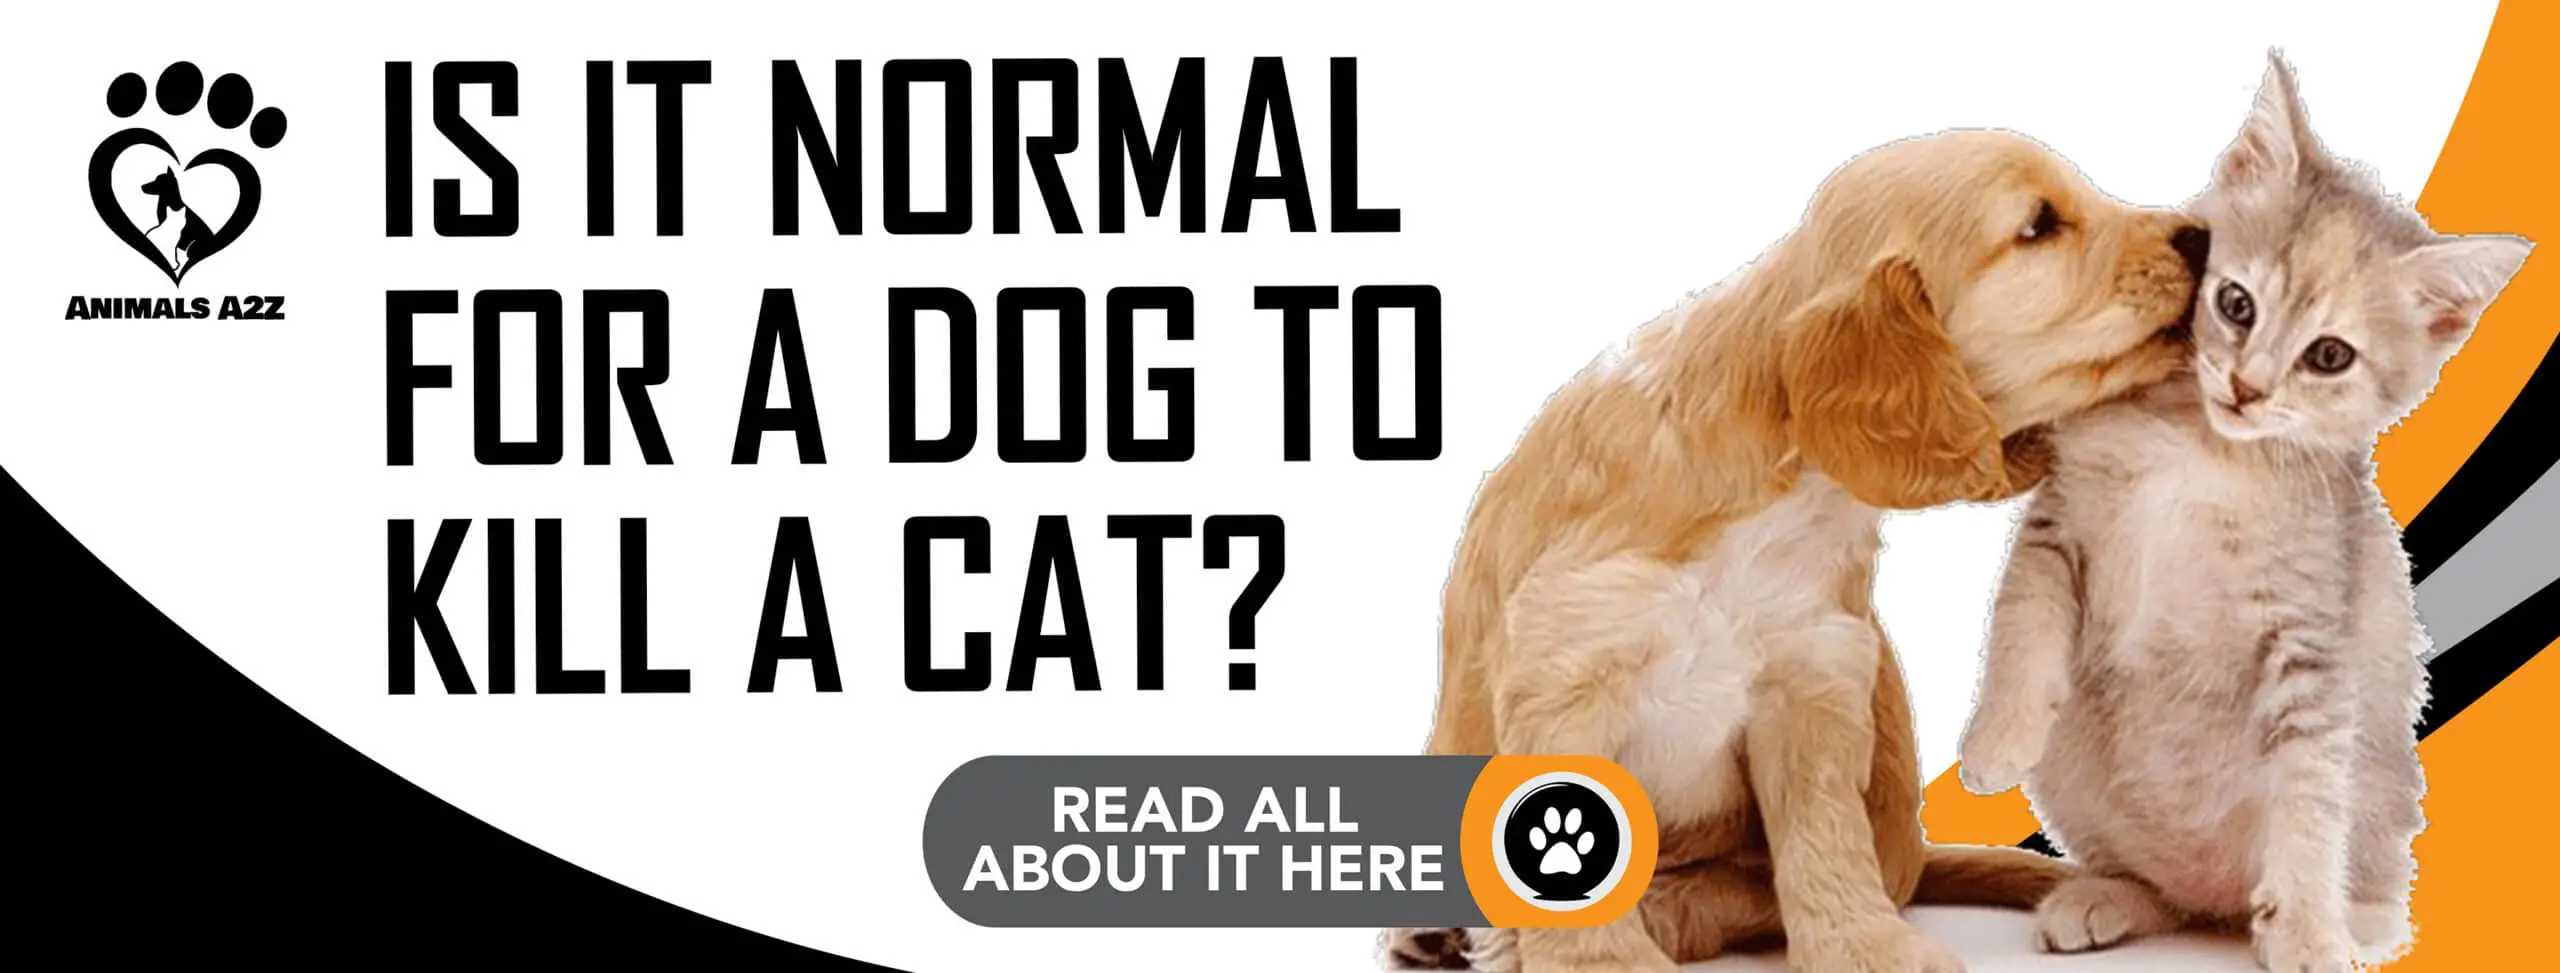 ¿Es normal que un perro mate a un gato?